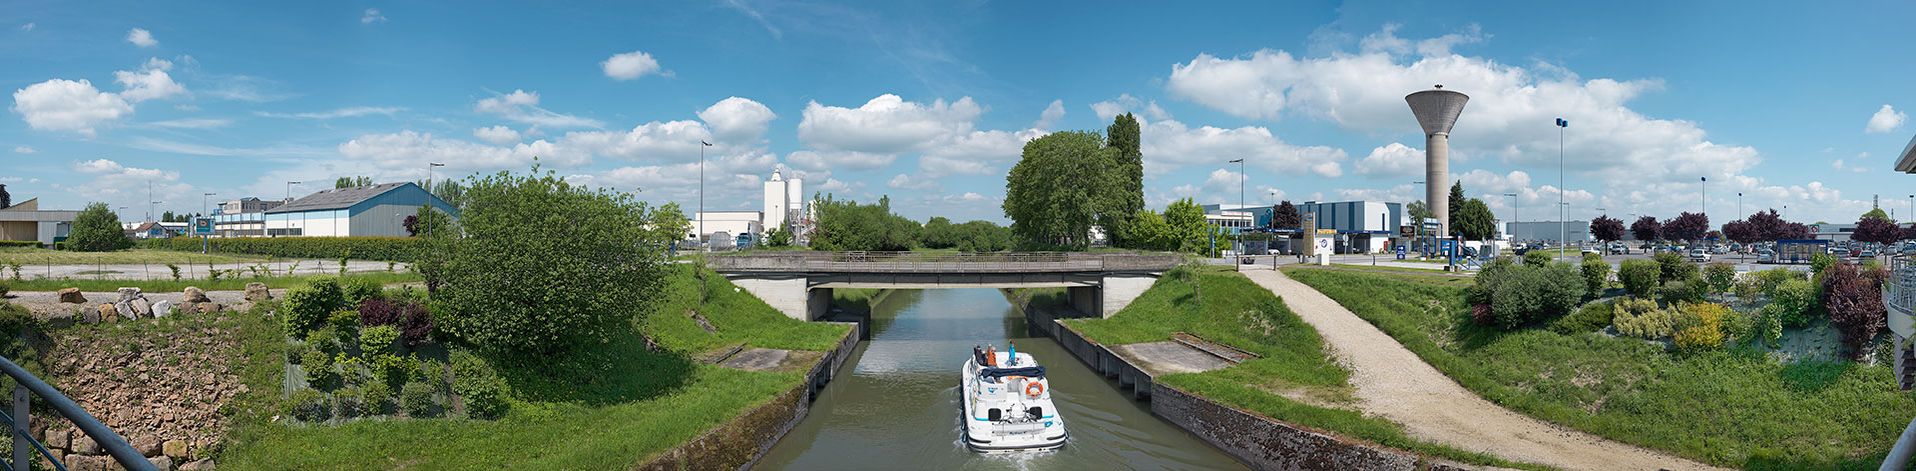 Ensemble industriel s’étendant de part et d’autre du canal du Centre à hauteur du bief 34bis du versant Méditerranée à Crissey et Chalon-sur-Saône. Cette zone industrielle a été créée à la suite de la déviation du canal dans Chalon à la fin des années 1950.